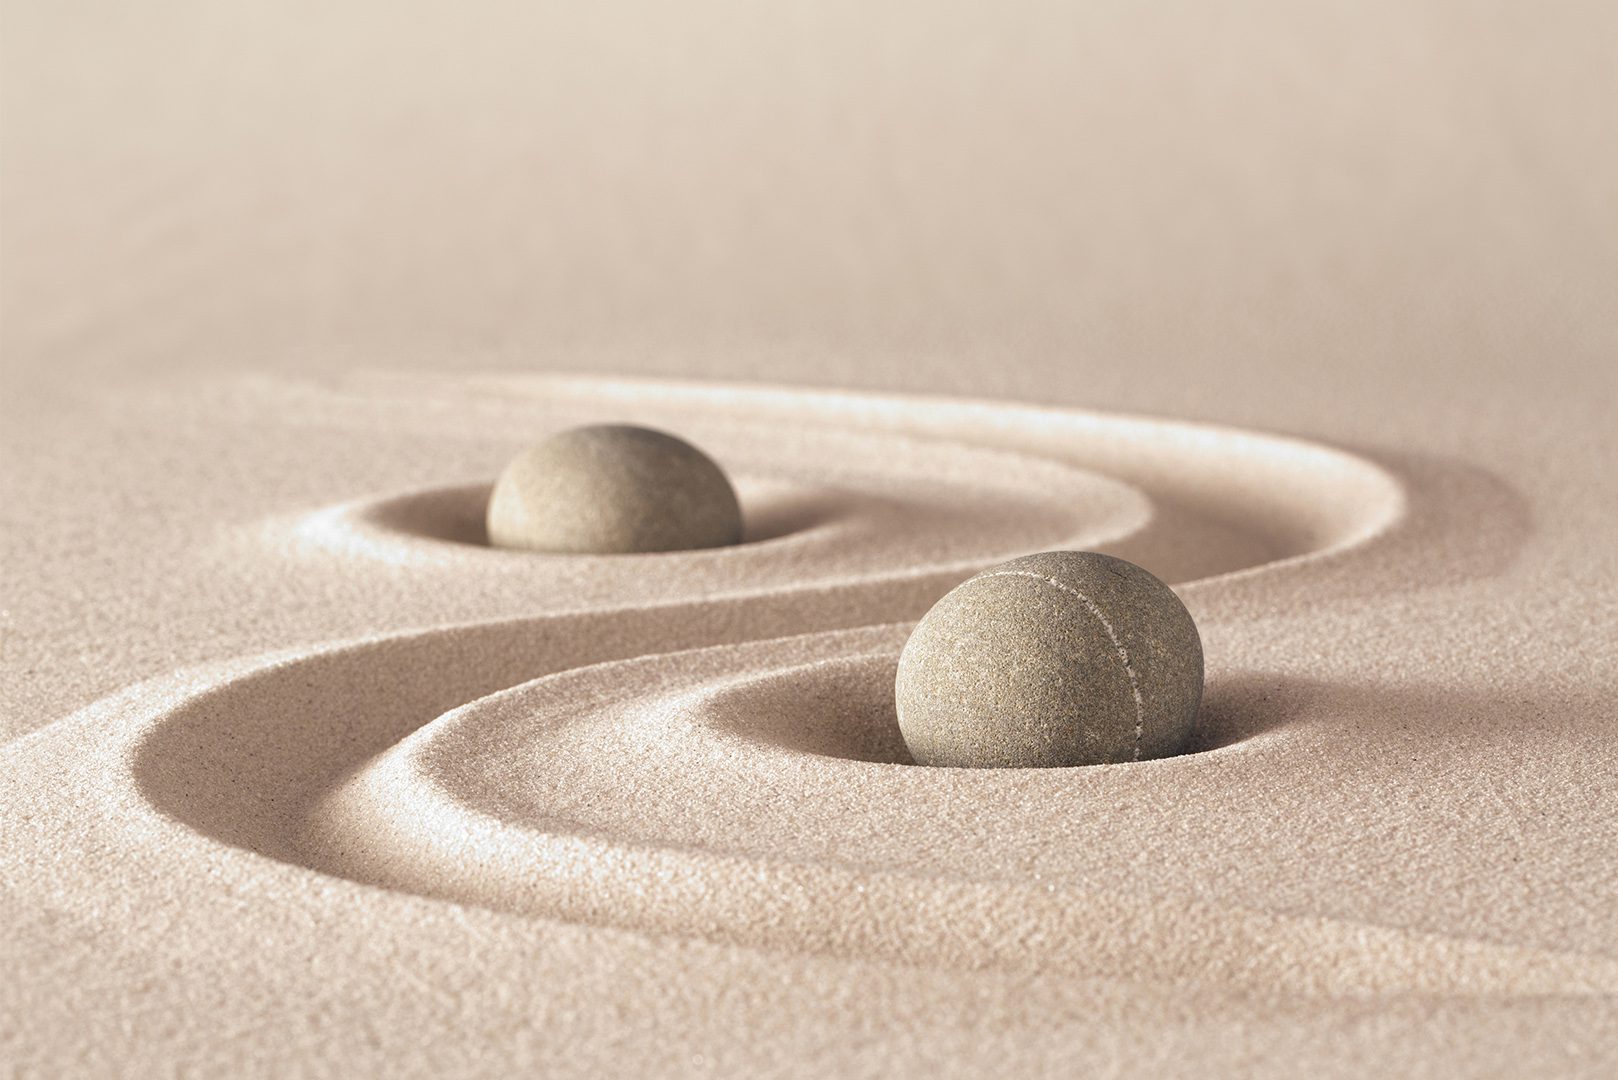 Zen garden meditation stones and lines in sand